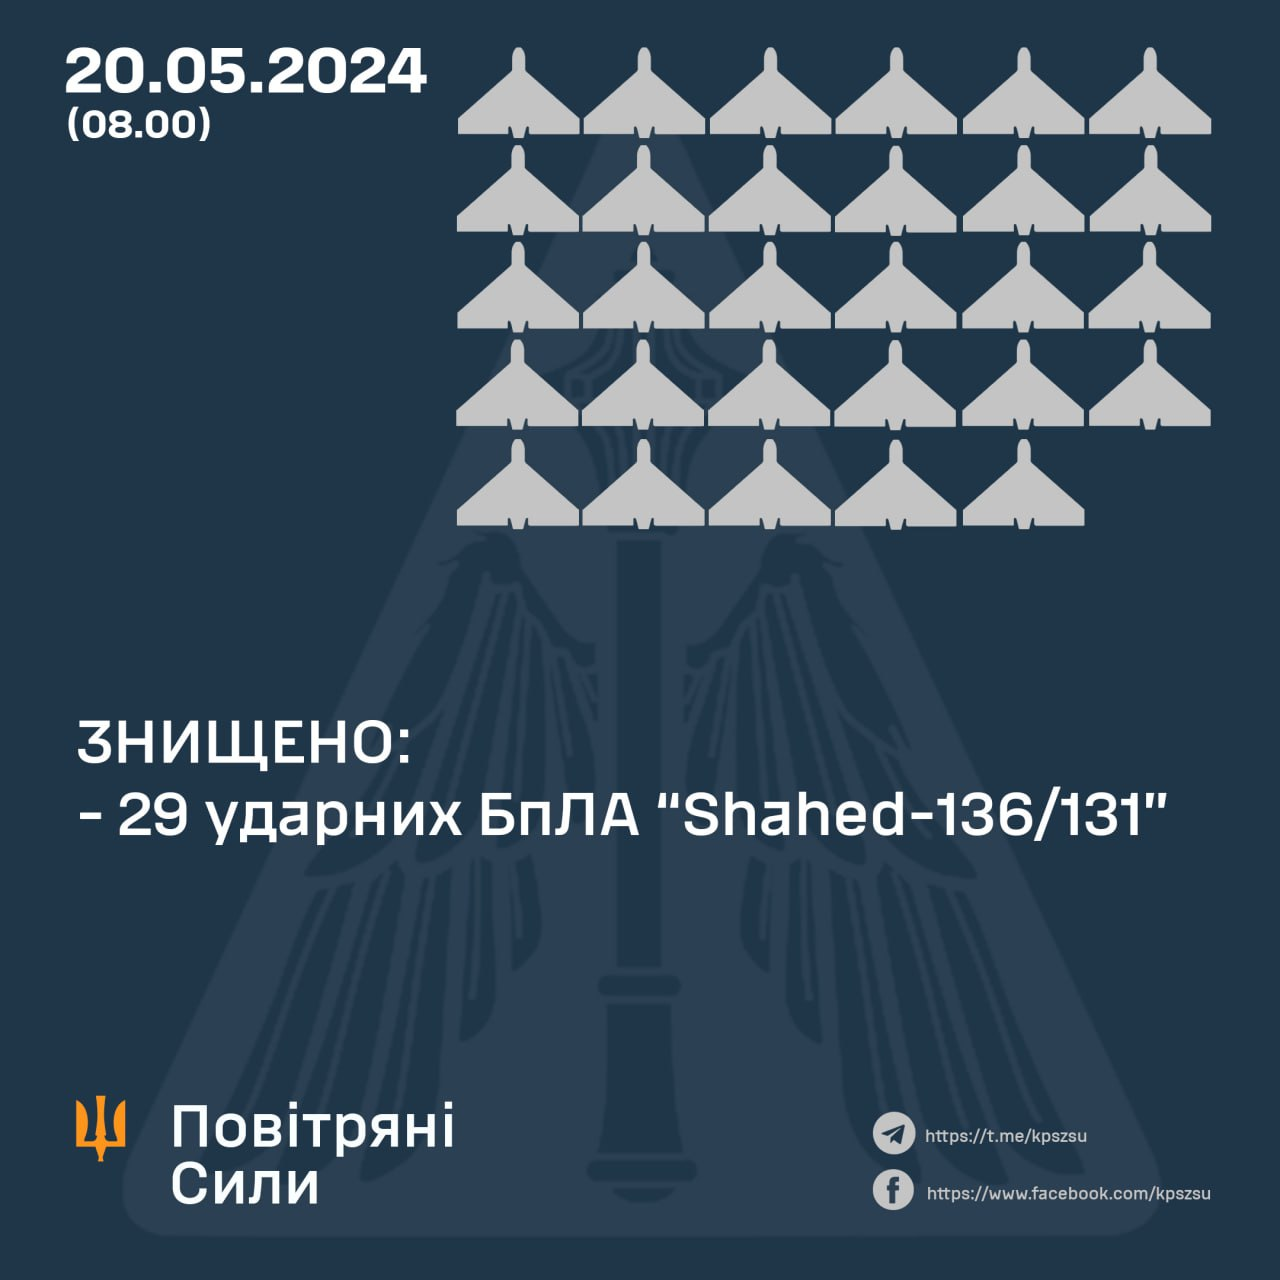 Нічна атака на Україну. Сили ППО знищили усі 29  dqdiqhiqdkideeant